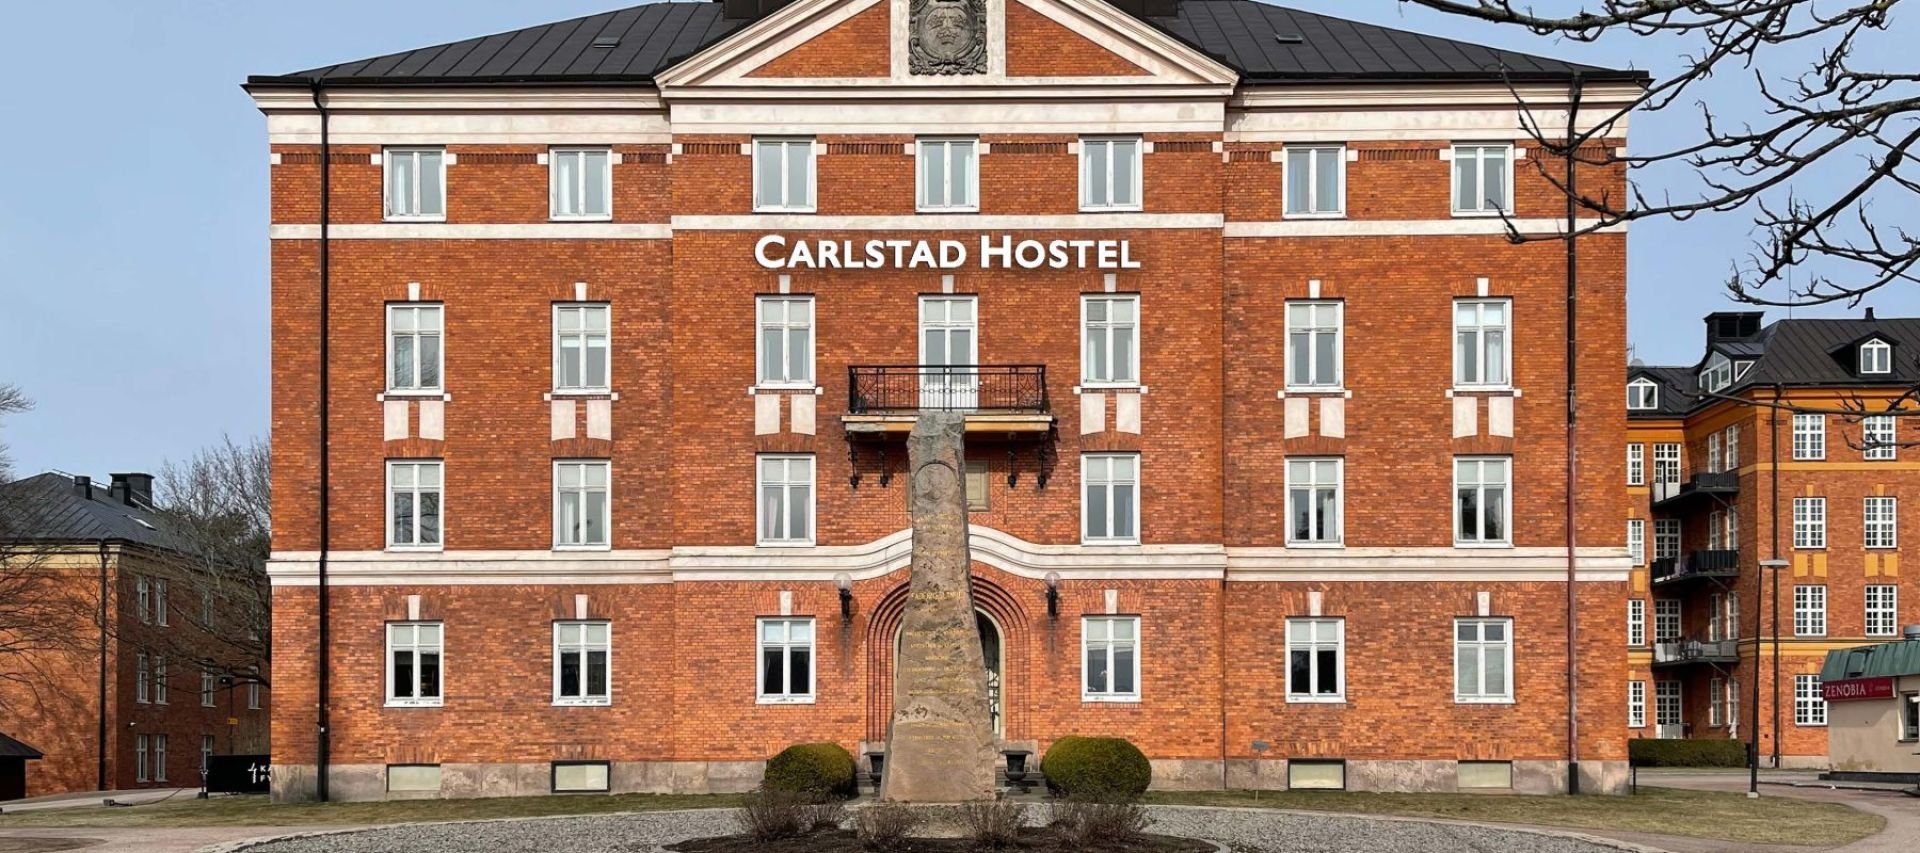 Carlstad Hostel